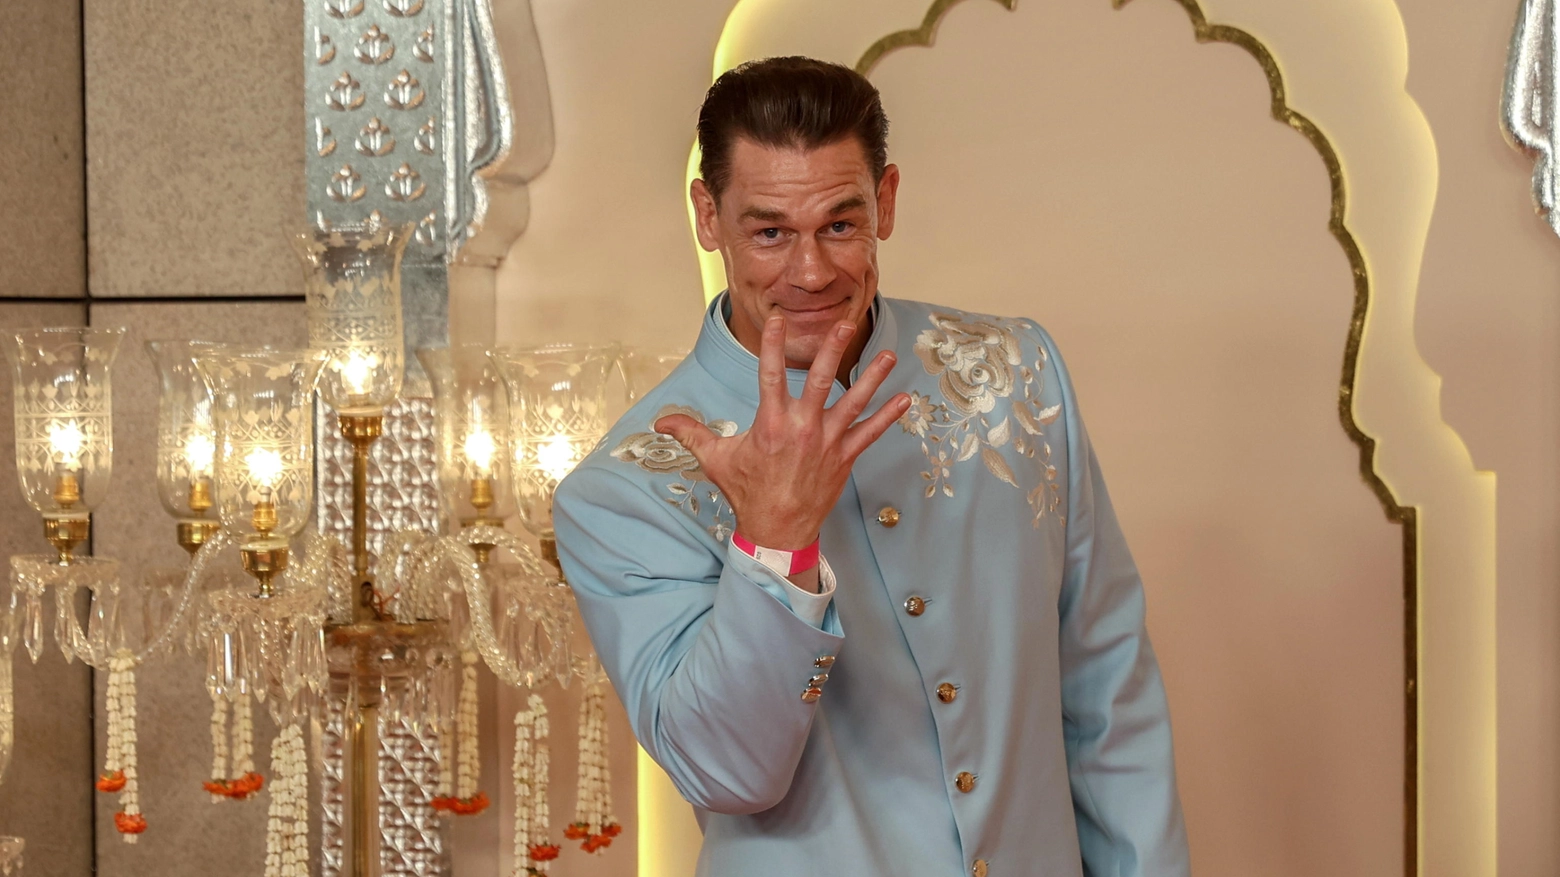 Il wrestler e attore John Cena al matrimonio (Ansa)